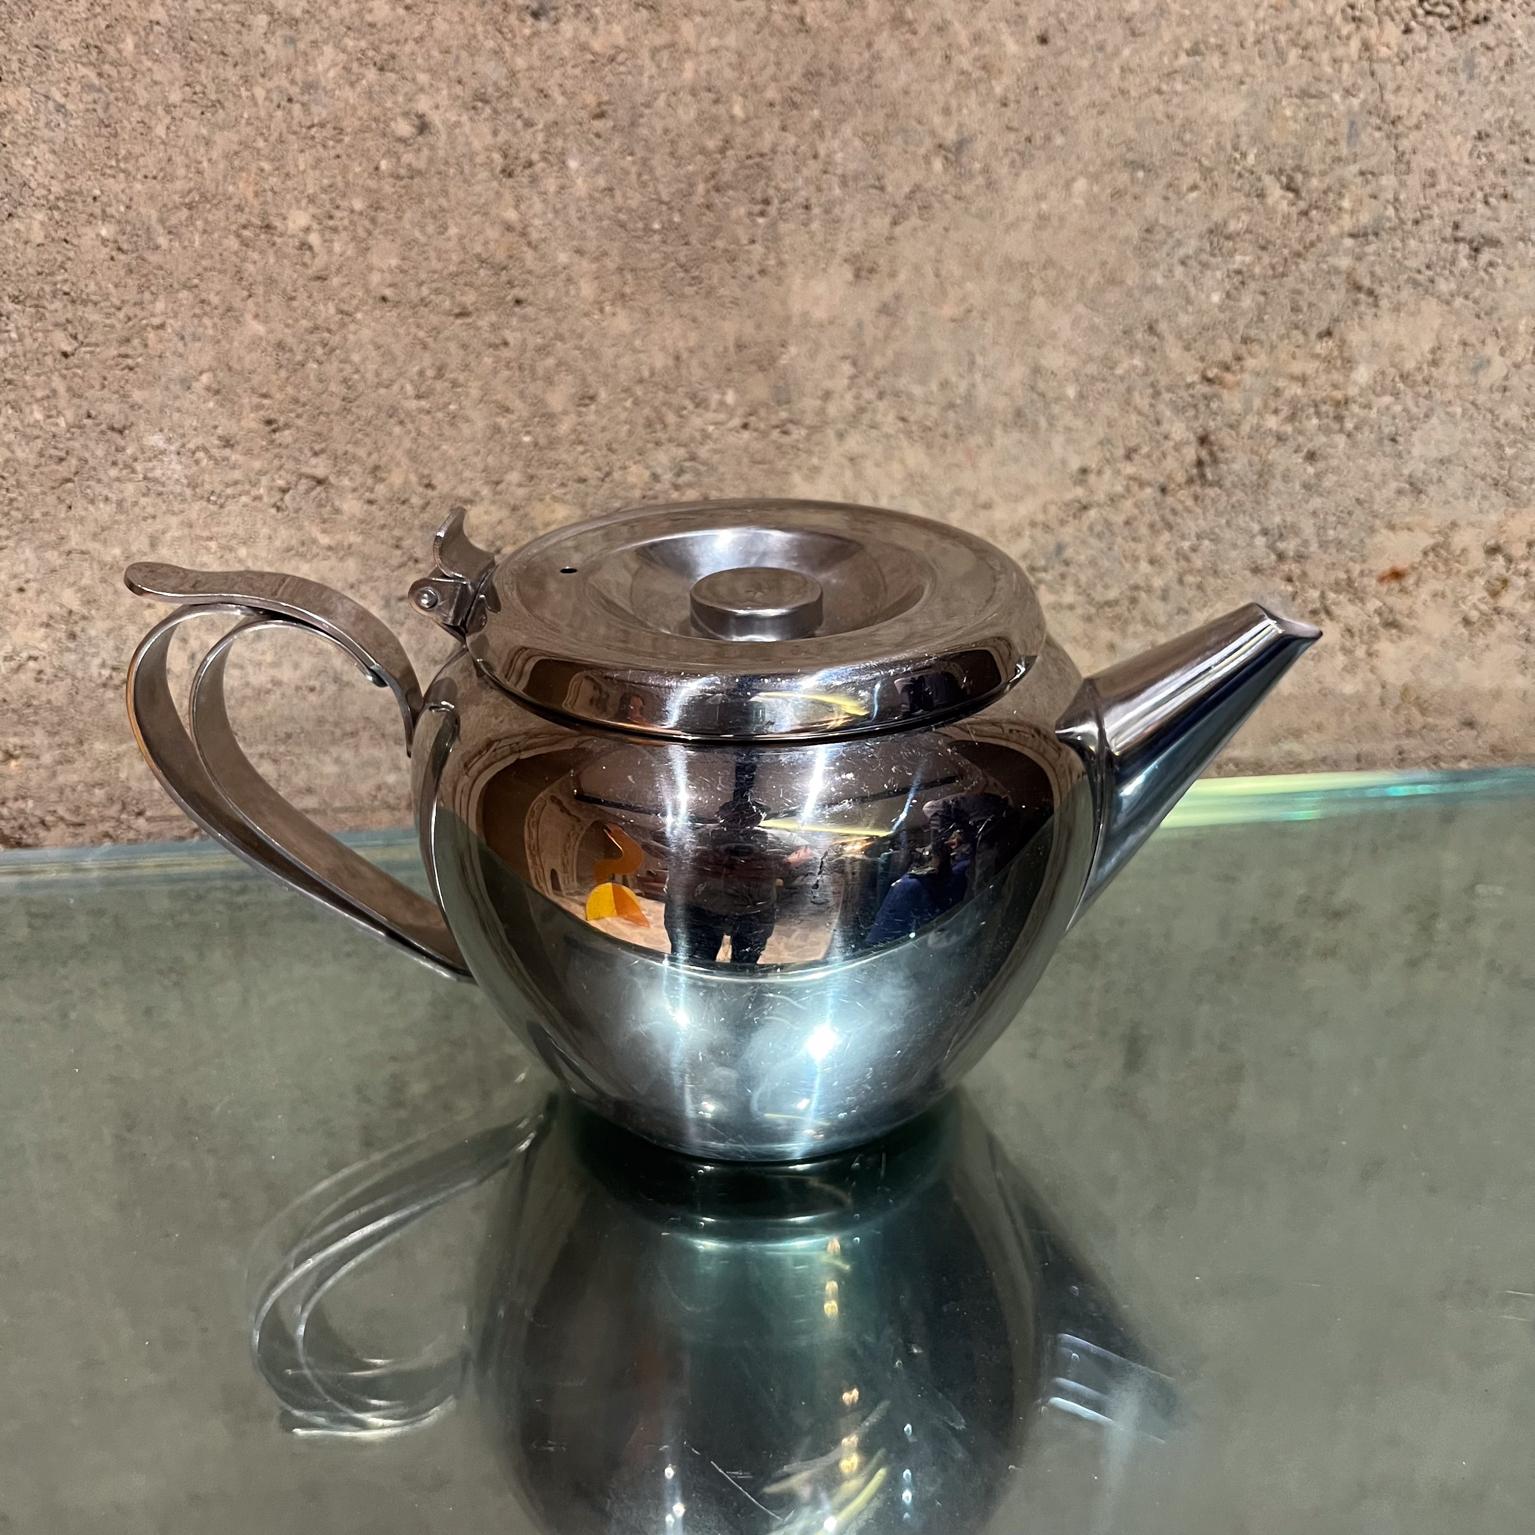 1960s Vintage Sunnex Tea Pot Hong Kong
estampillé par le fabricant
Acier inoxydable
4,5 h x 8,75 p x 5 w
fabriqué à Hong Kong
État d'origine vintage non restauré.
Voir toutes les images fournies.

